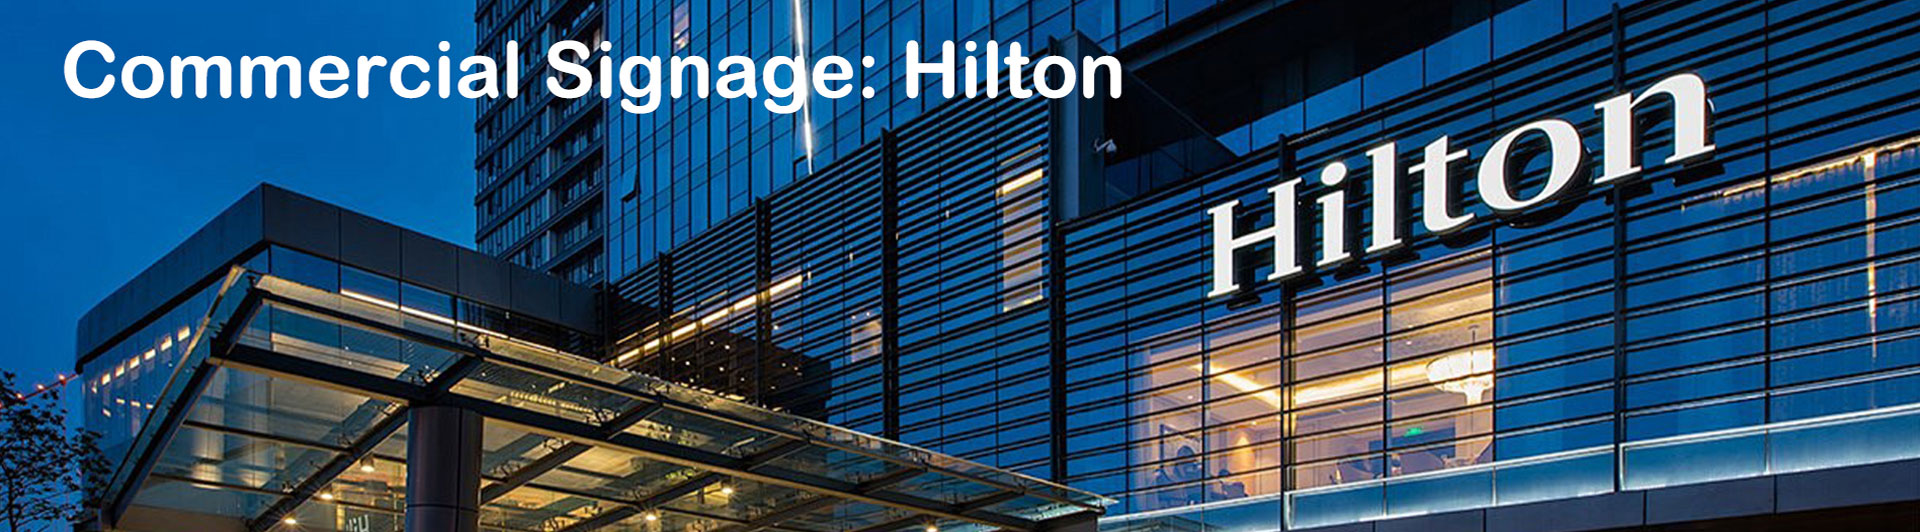 Commercial Signage: Hilton